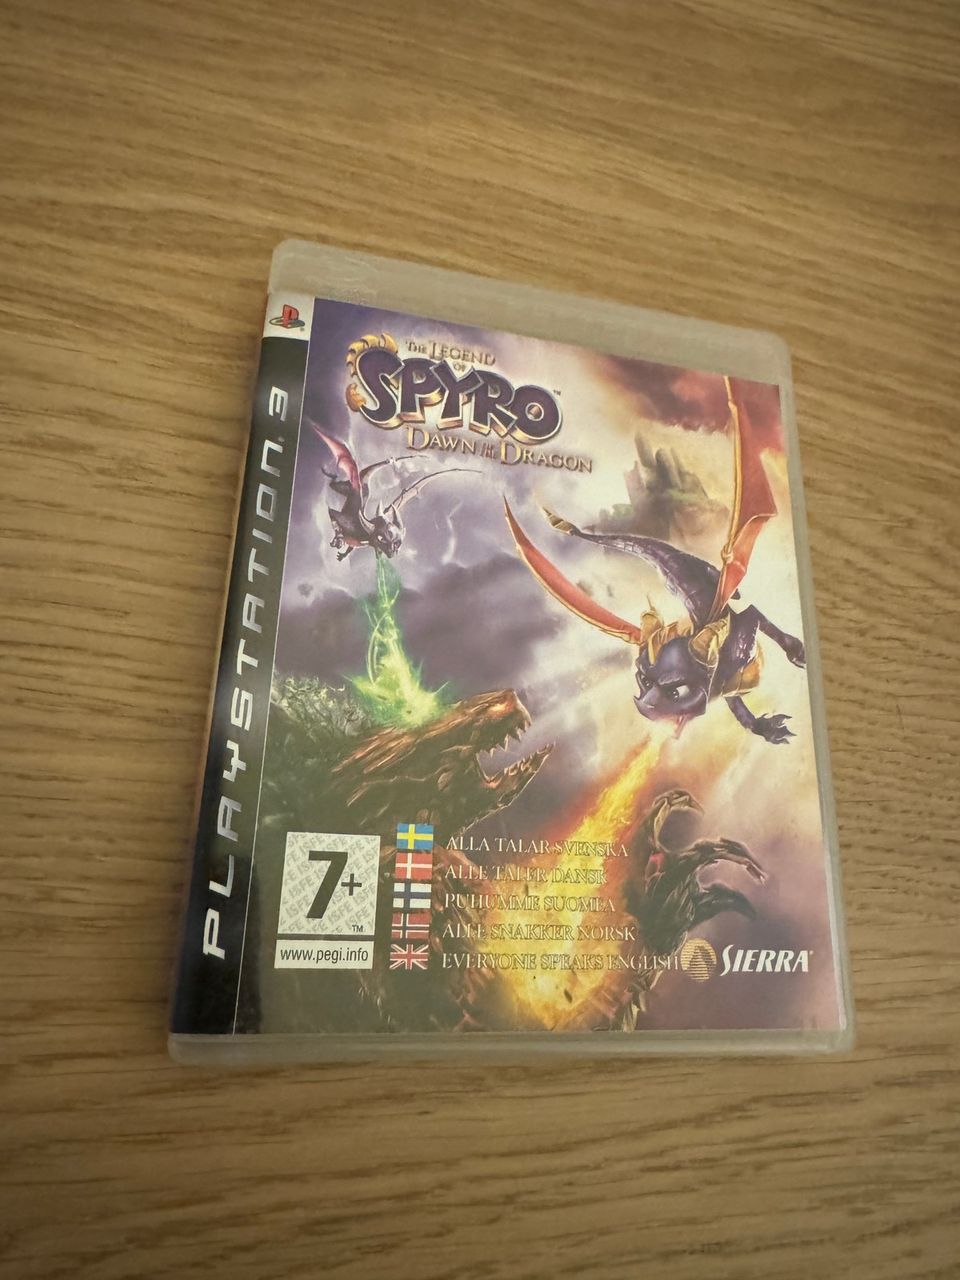 PS3 The Legend of Spyro - Dawn of The Dragon (CIB)